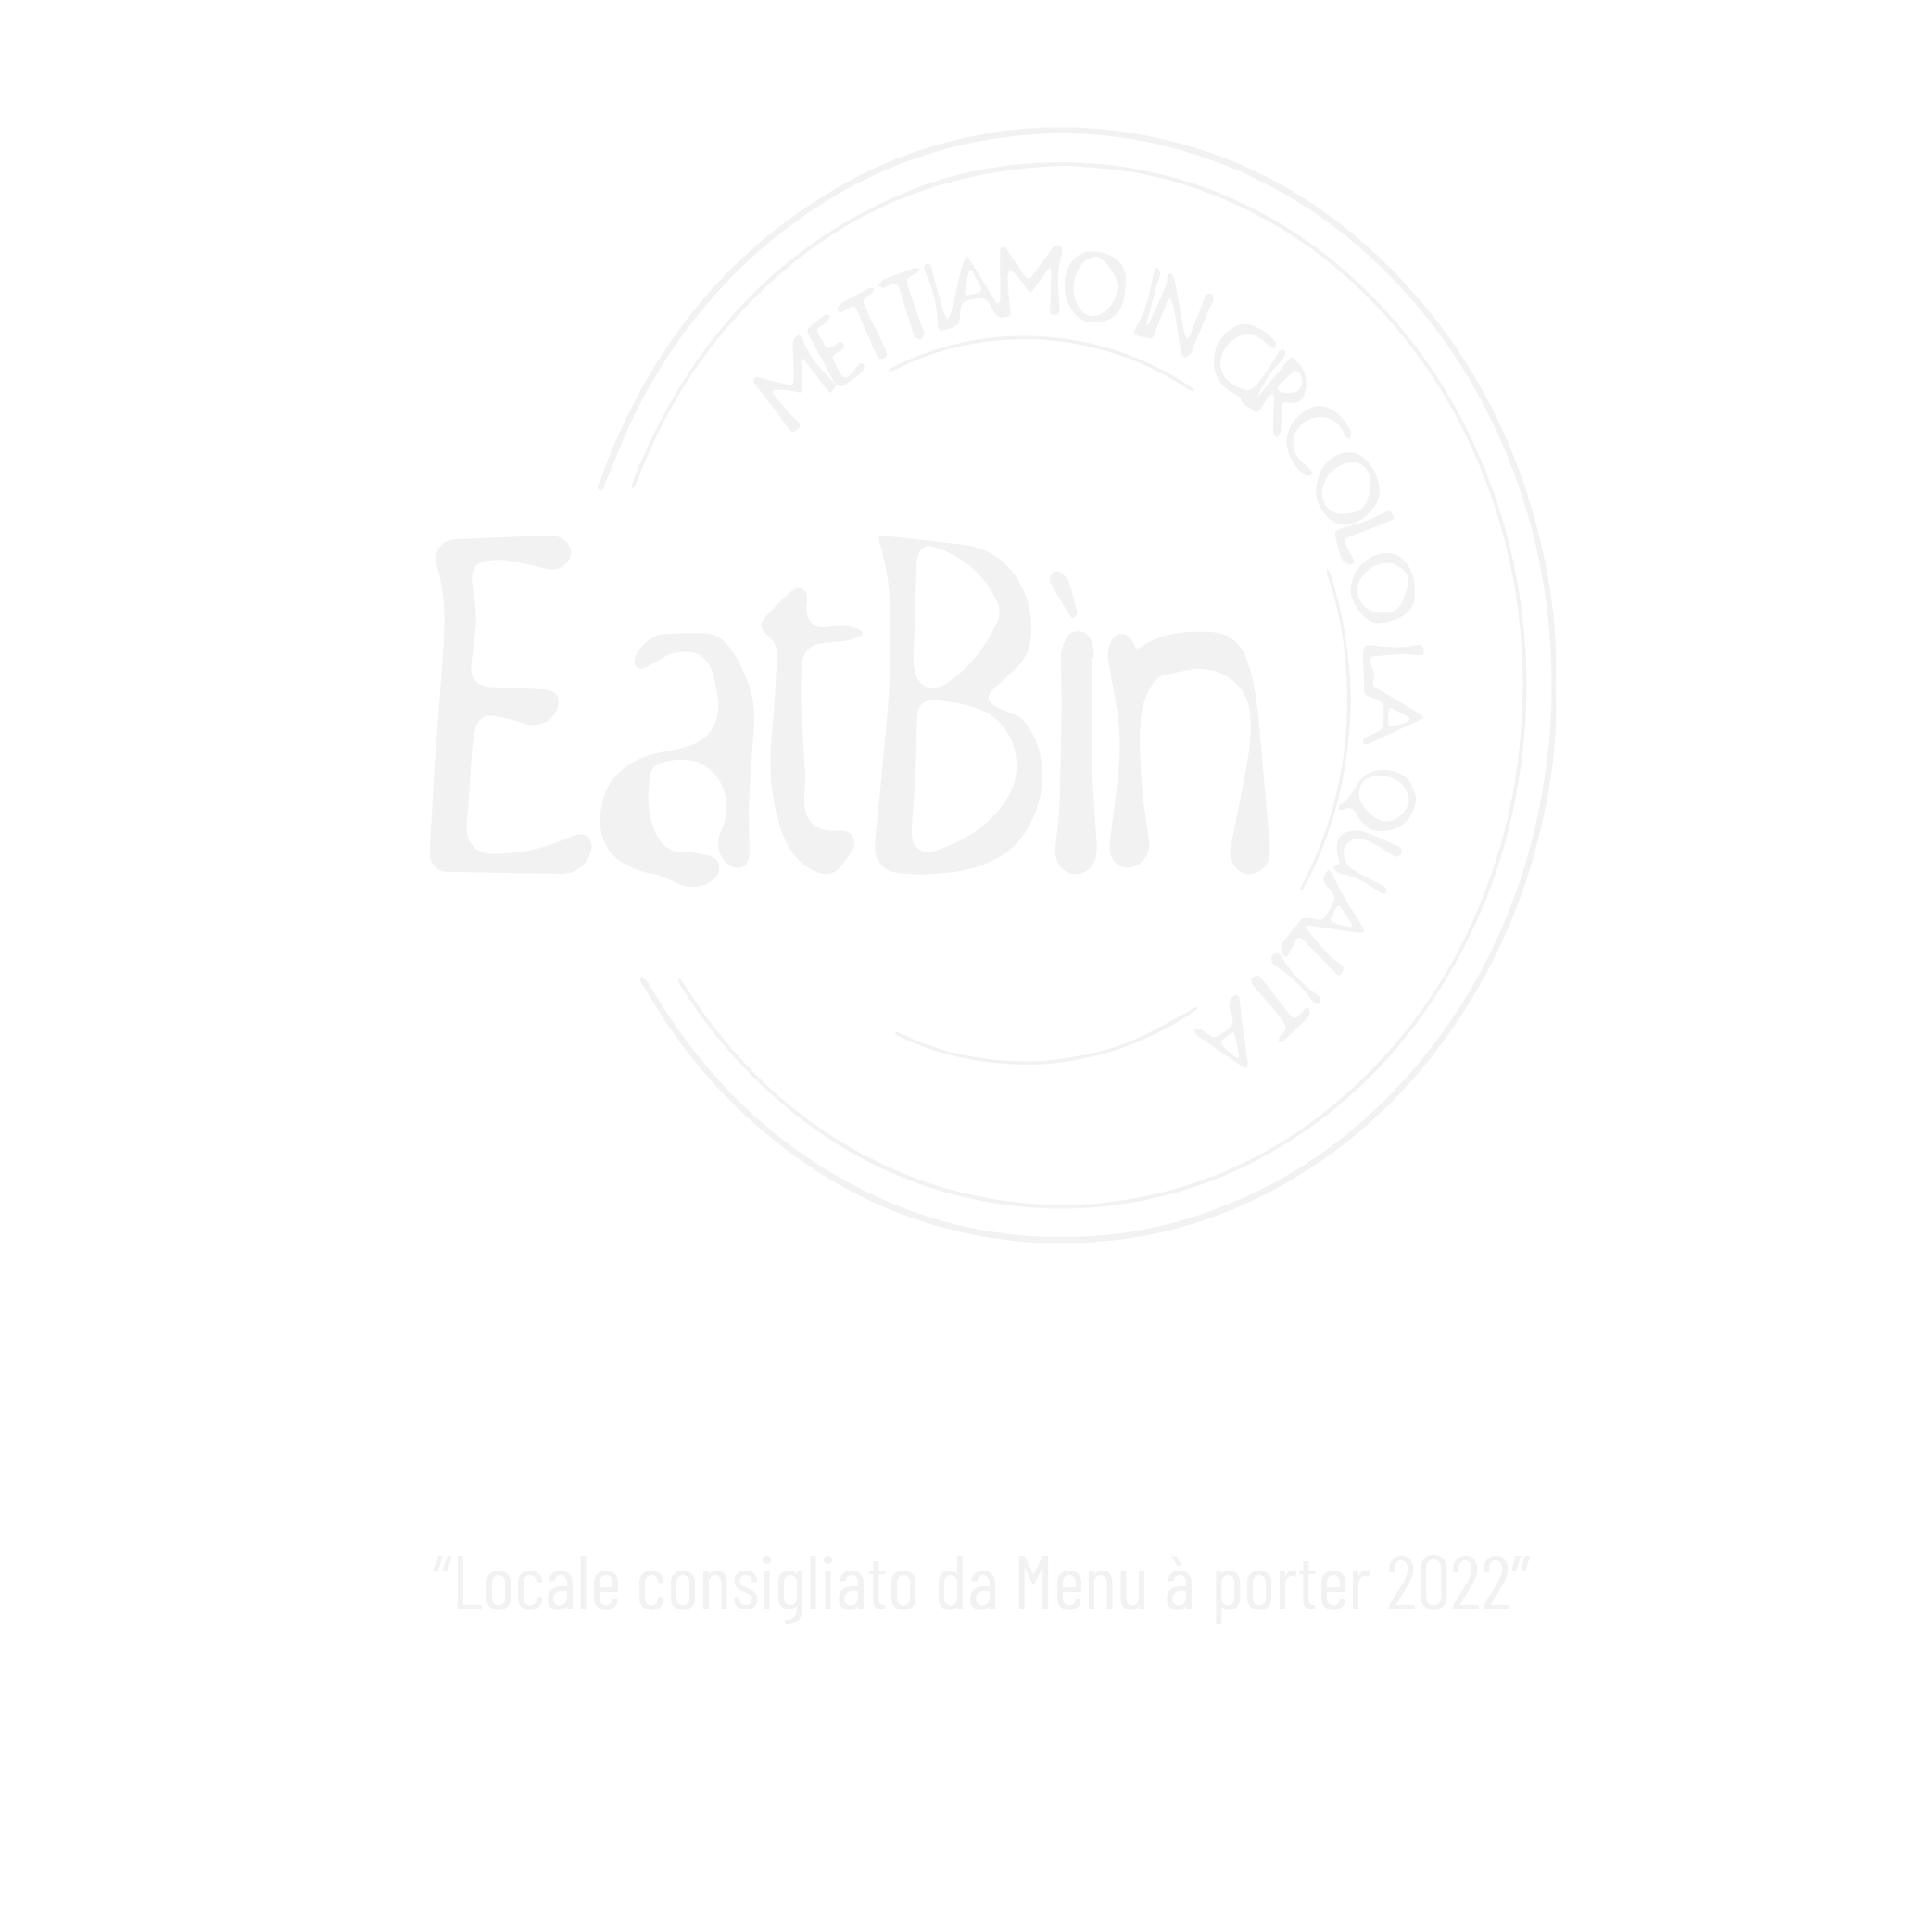 Eat bin